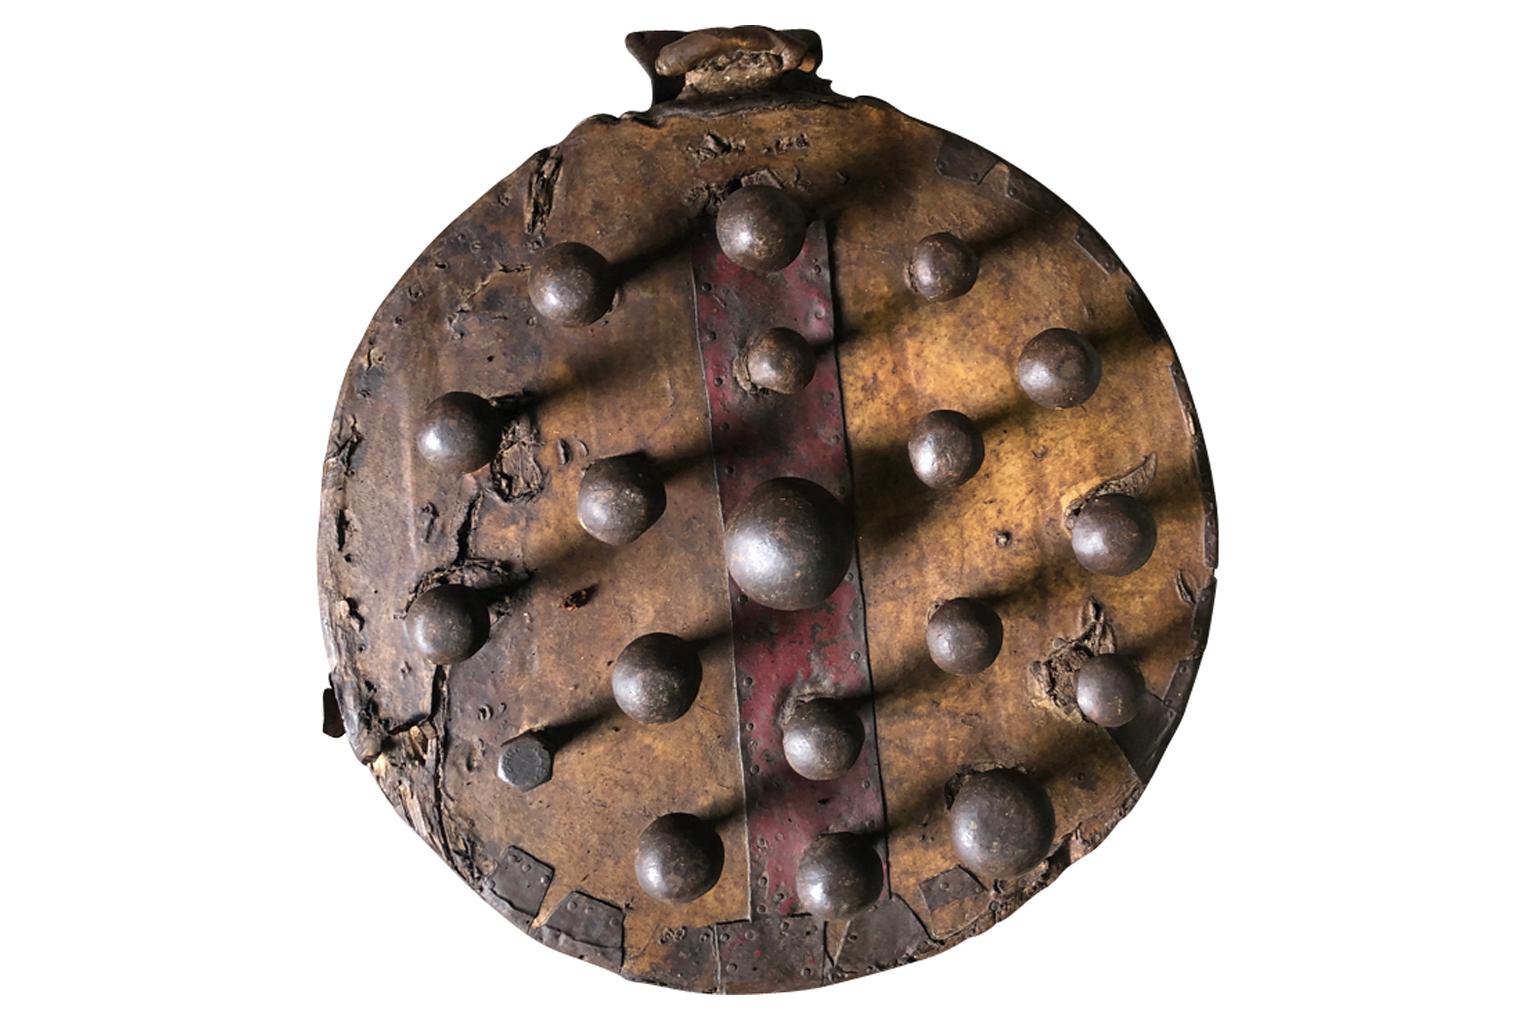 Ein sehr interessanter Handschuh aus dem 18. Jahrhundert aus Holz und Leder mit Eisenvorsprüngen. Die Hand wird in den Handschuh gesteckt, in dem alle Finger Platz haben - wie bei einem Baseballhandschuh. Der ursprüngliche Zweck dieses sehr